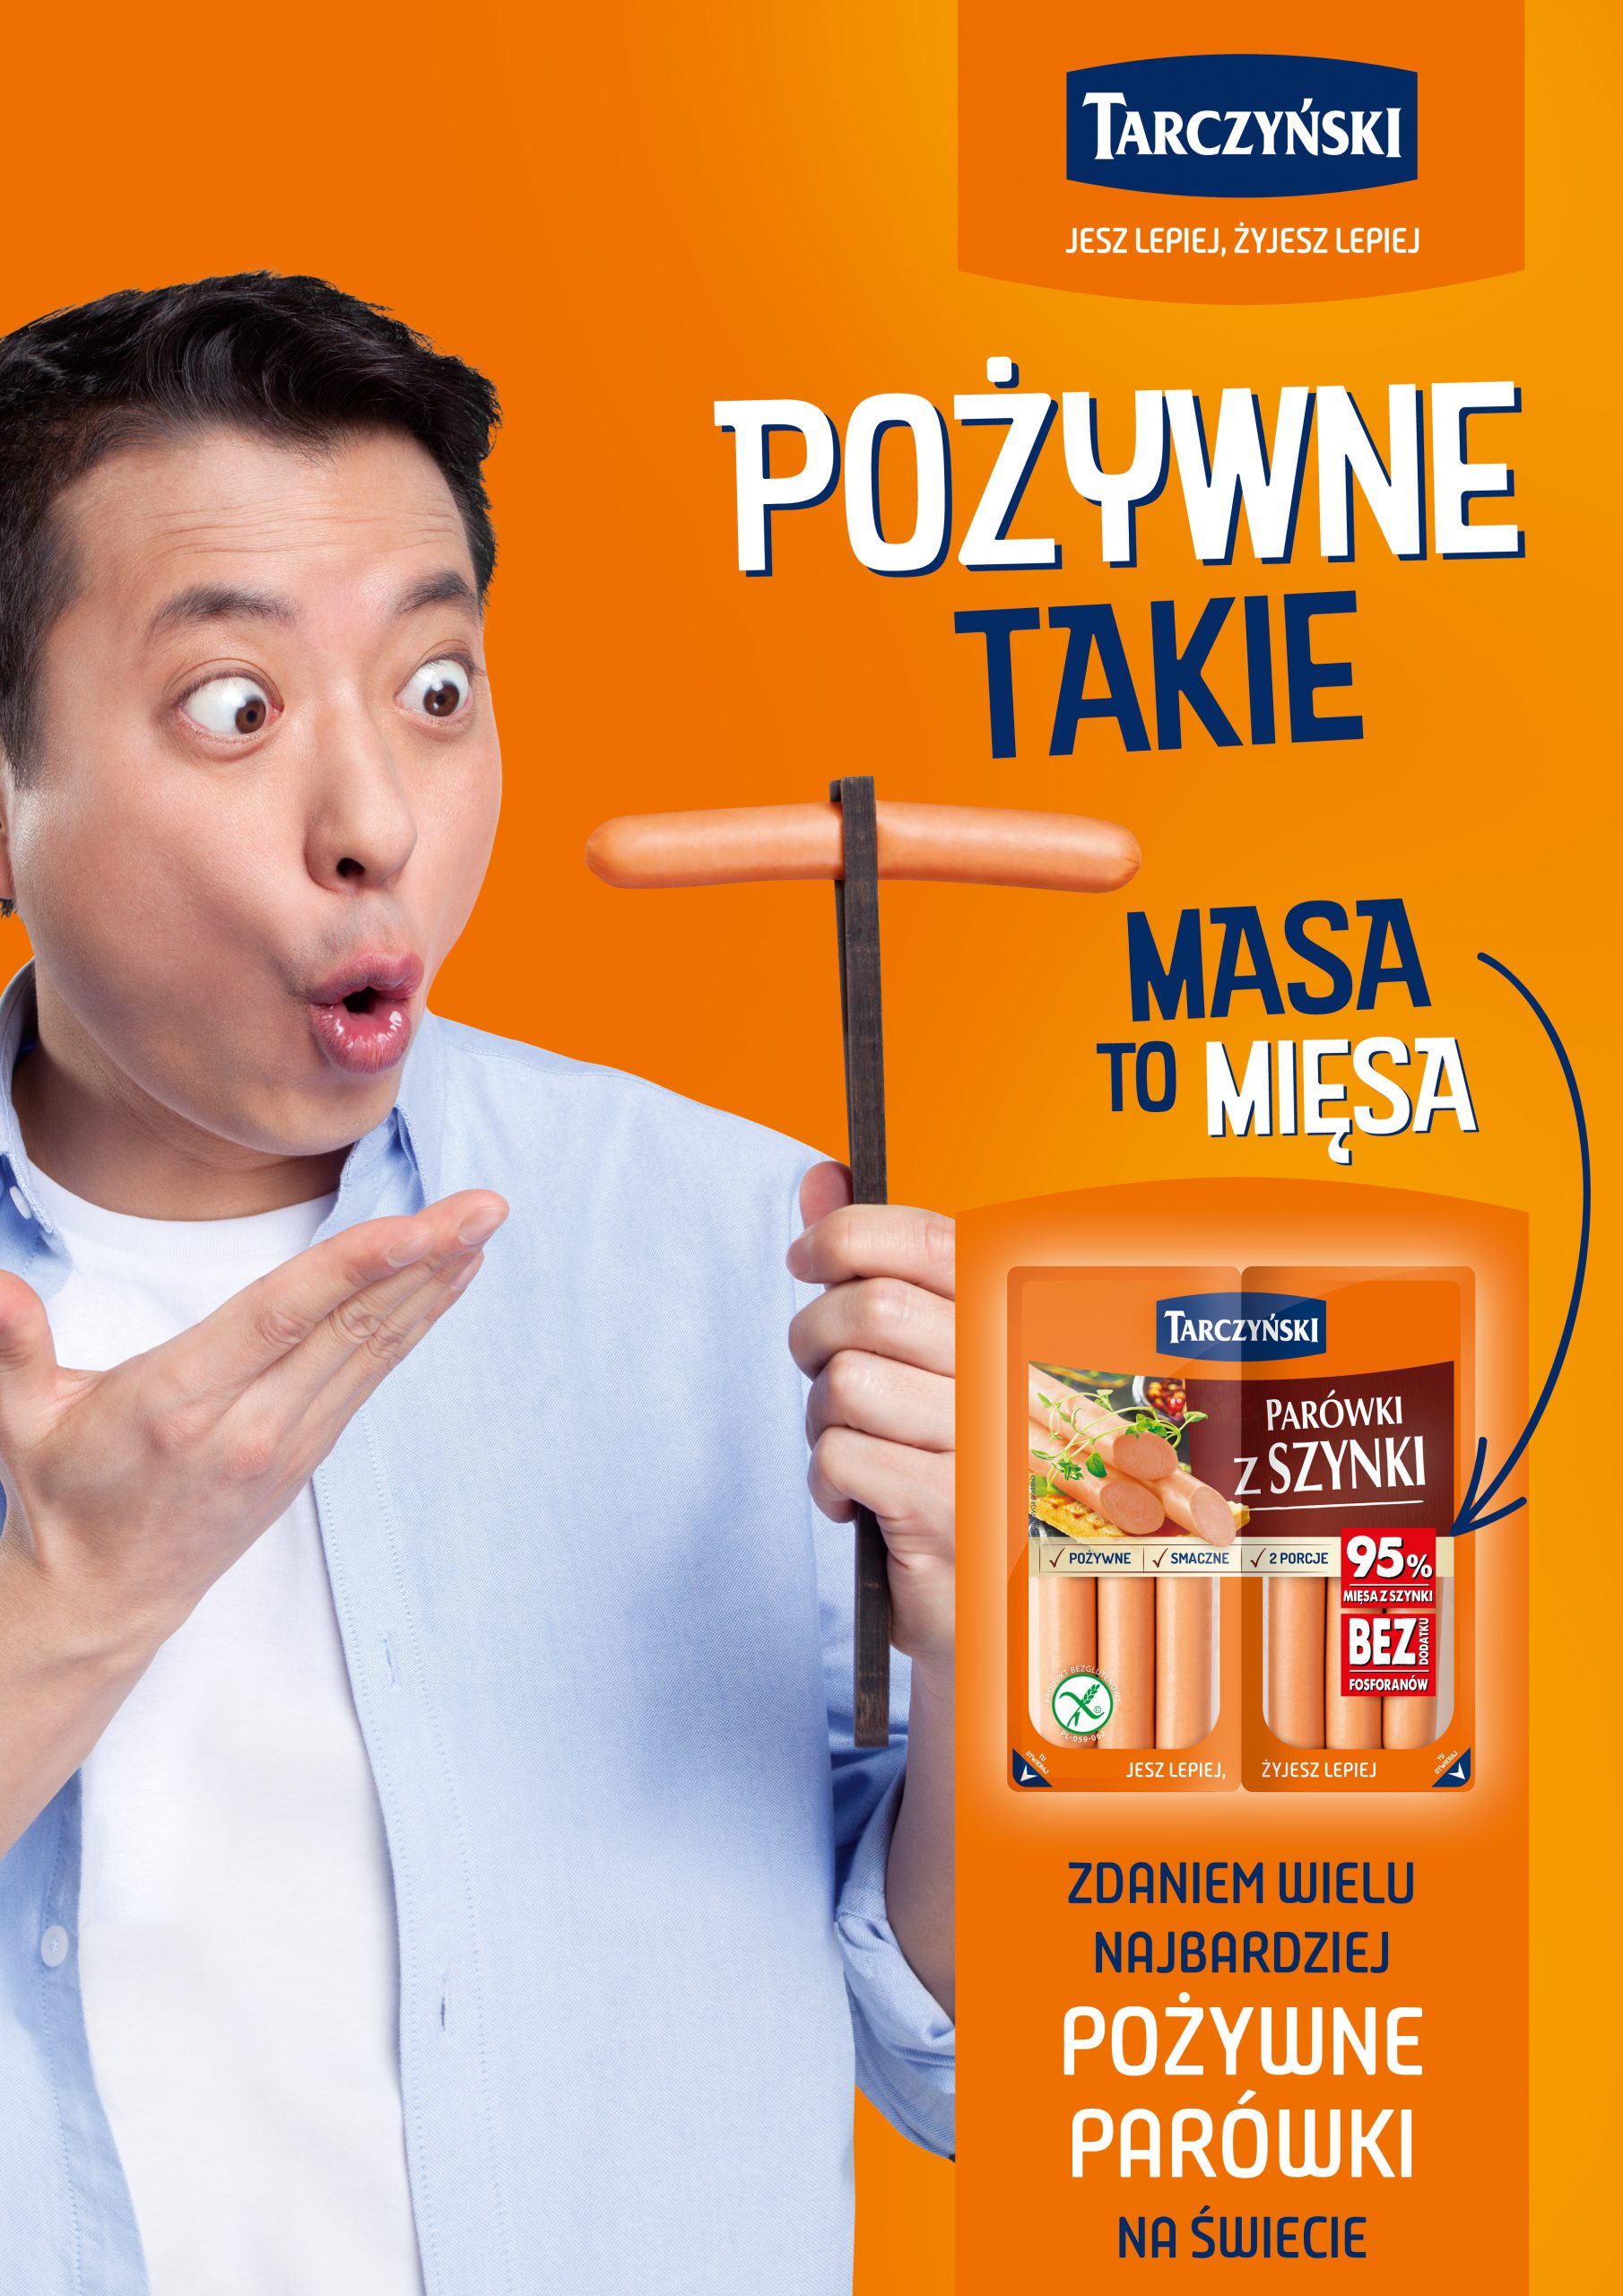 Rusza kampania reklamowa parówek premium marki Tarczyński